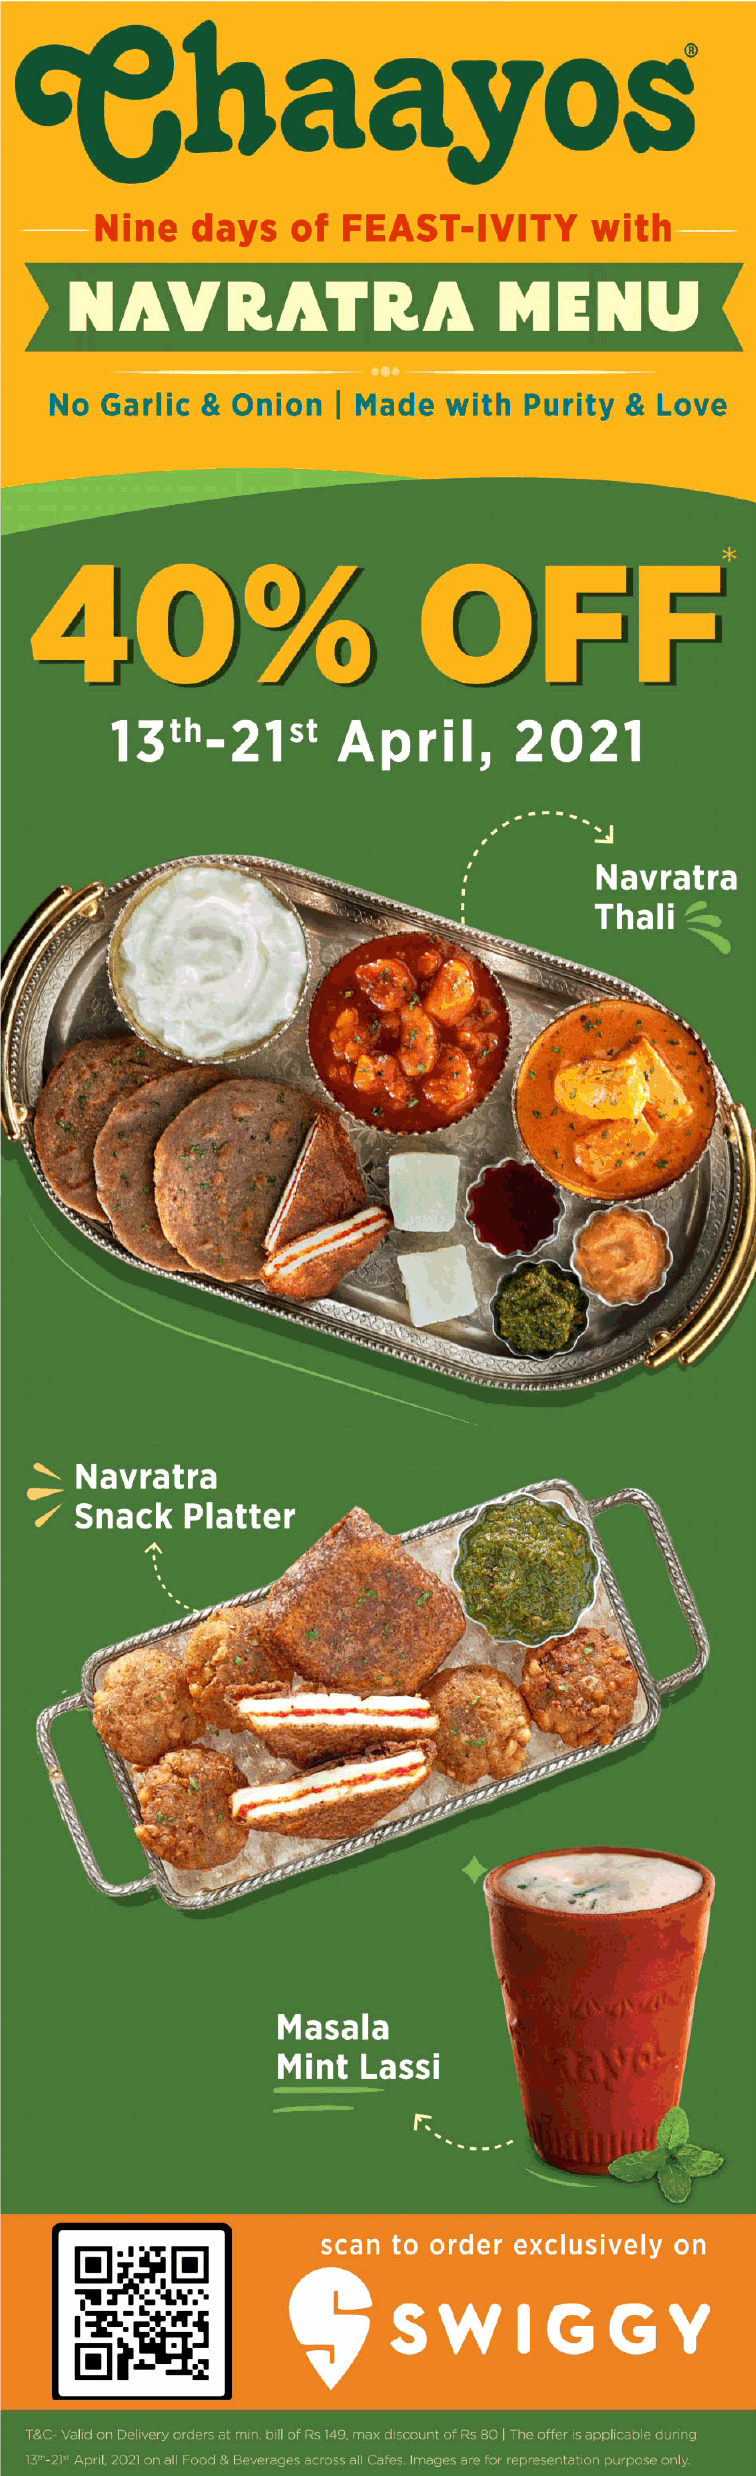 chaayos-navratra-menu-40%-off-ad-delhi-times-13-04-2021